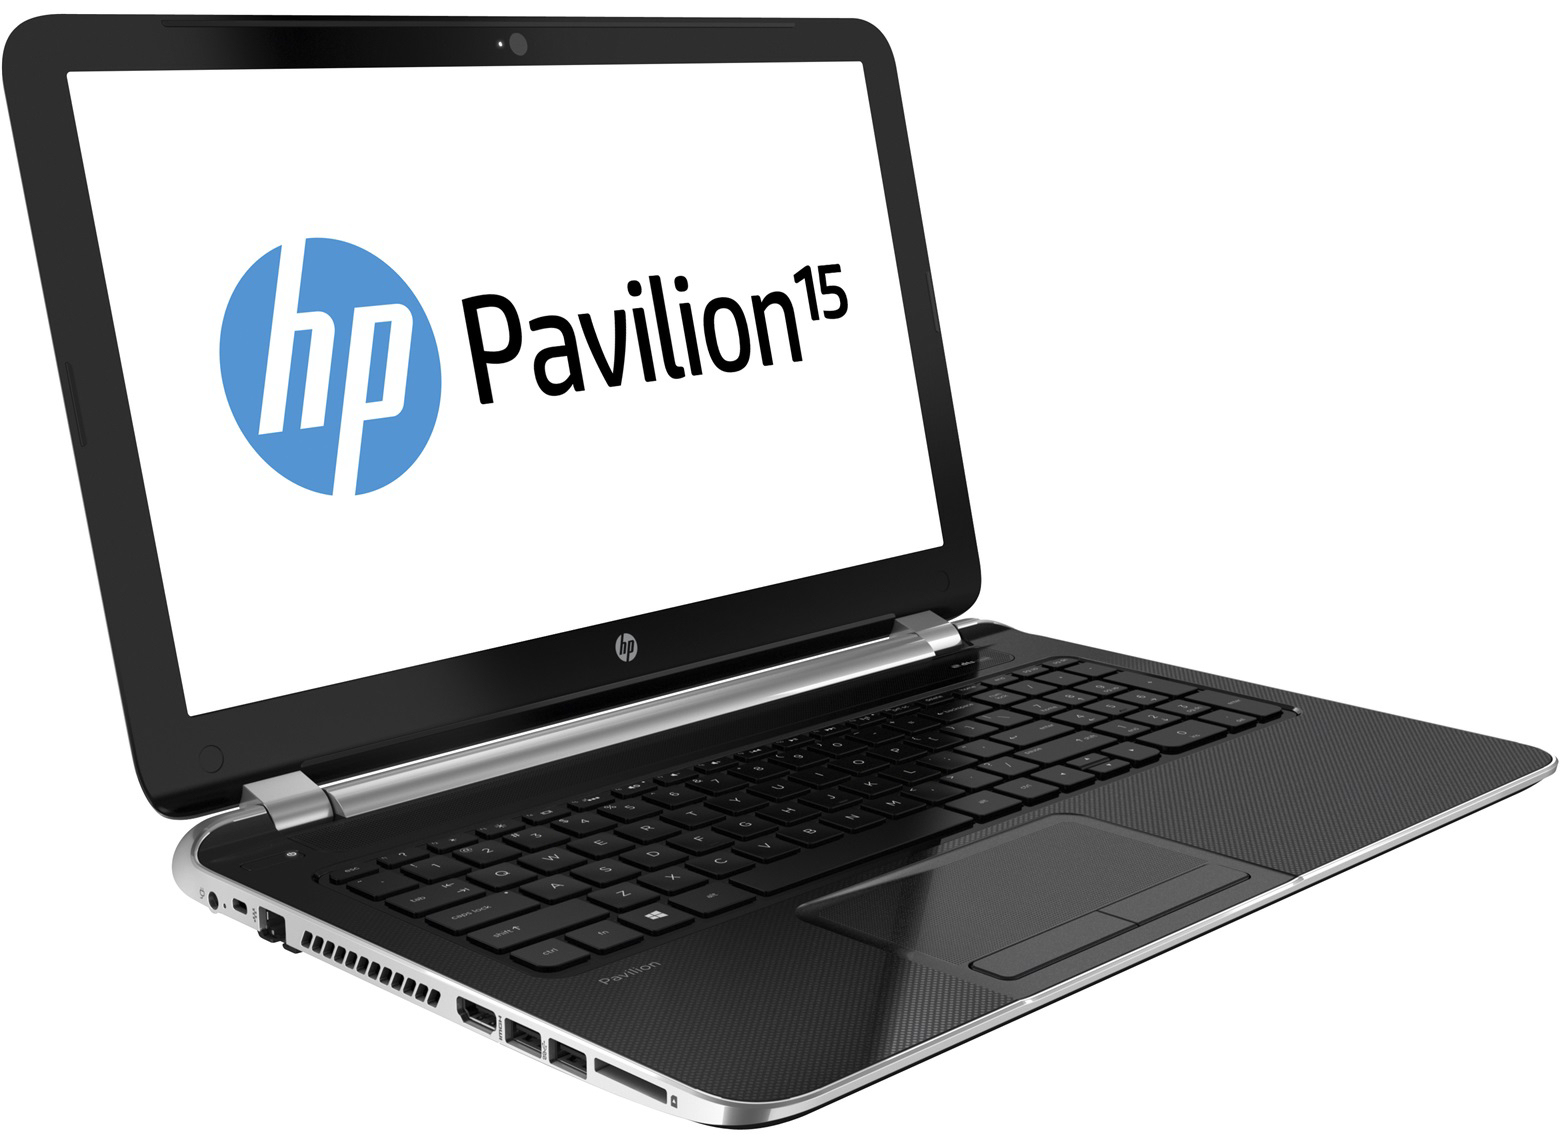 HP Pavilion 15 AMD A6 5200 - Ram 4G - HDD 750GB - Card rời 1GB = 5tr - 1